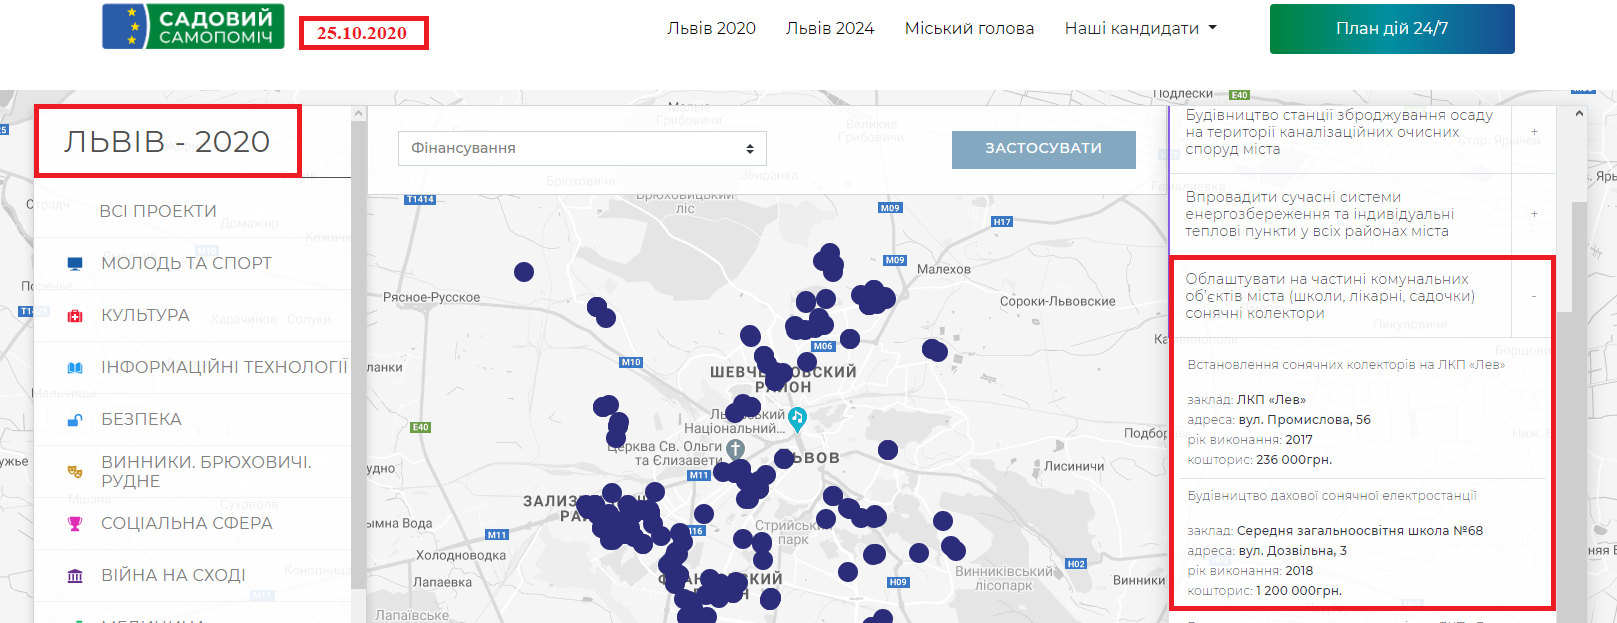 https://lviv2020.com.ua/map/2020/14